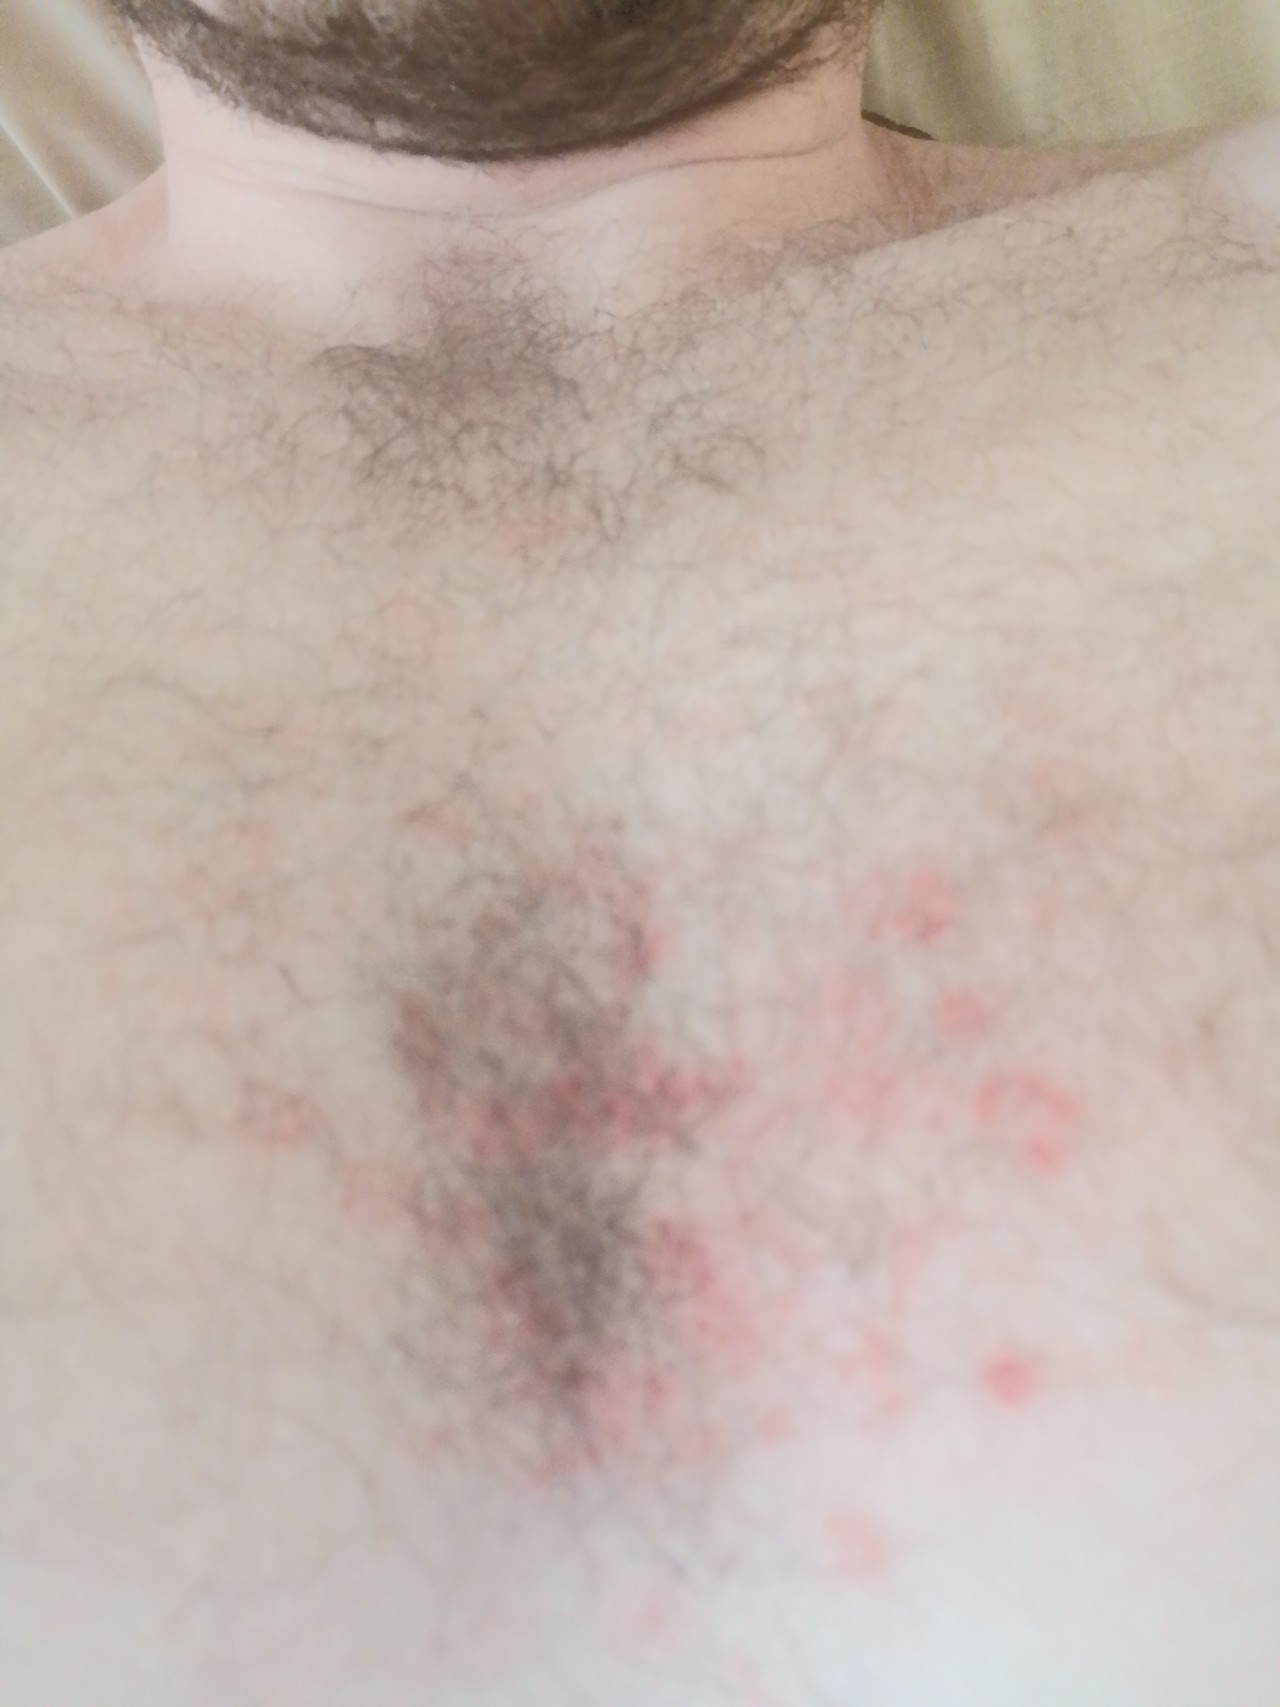 сыпь в области груди у мужчин фото 60